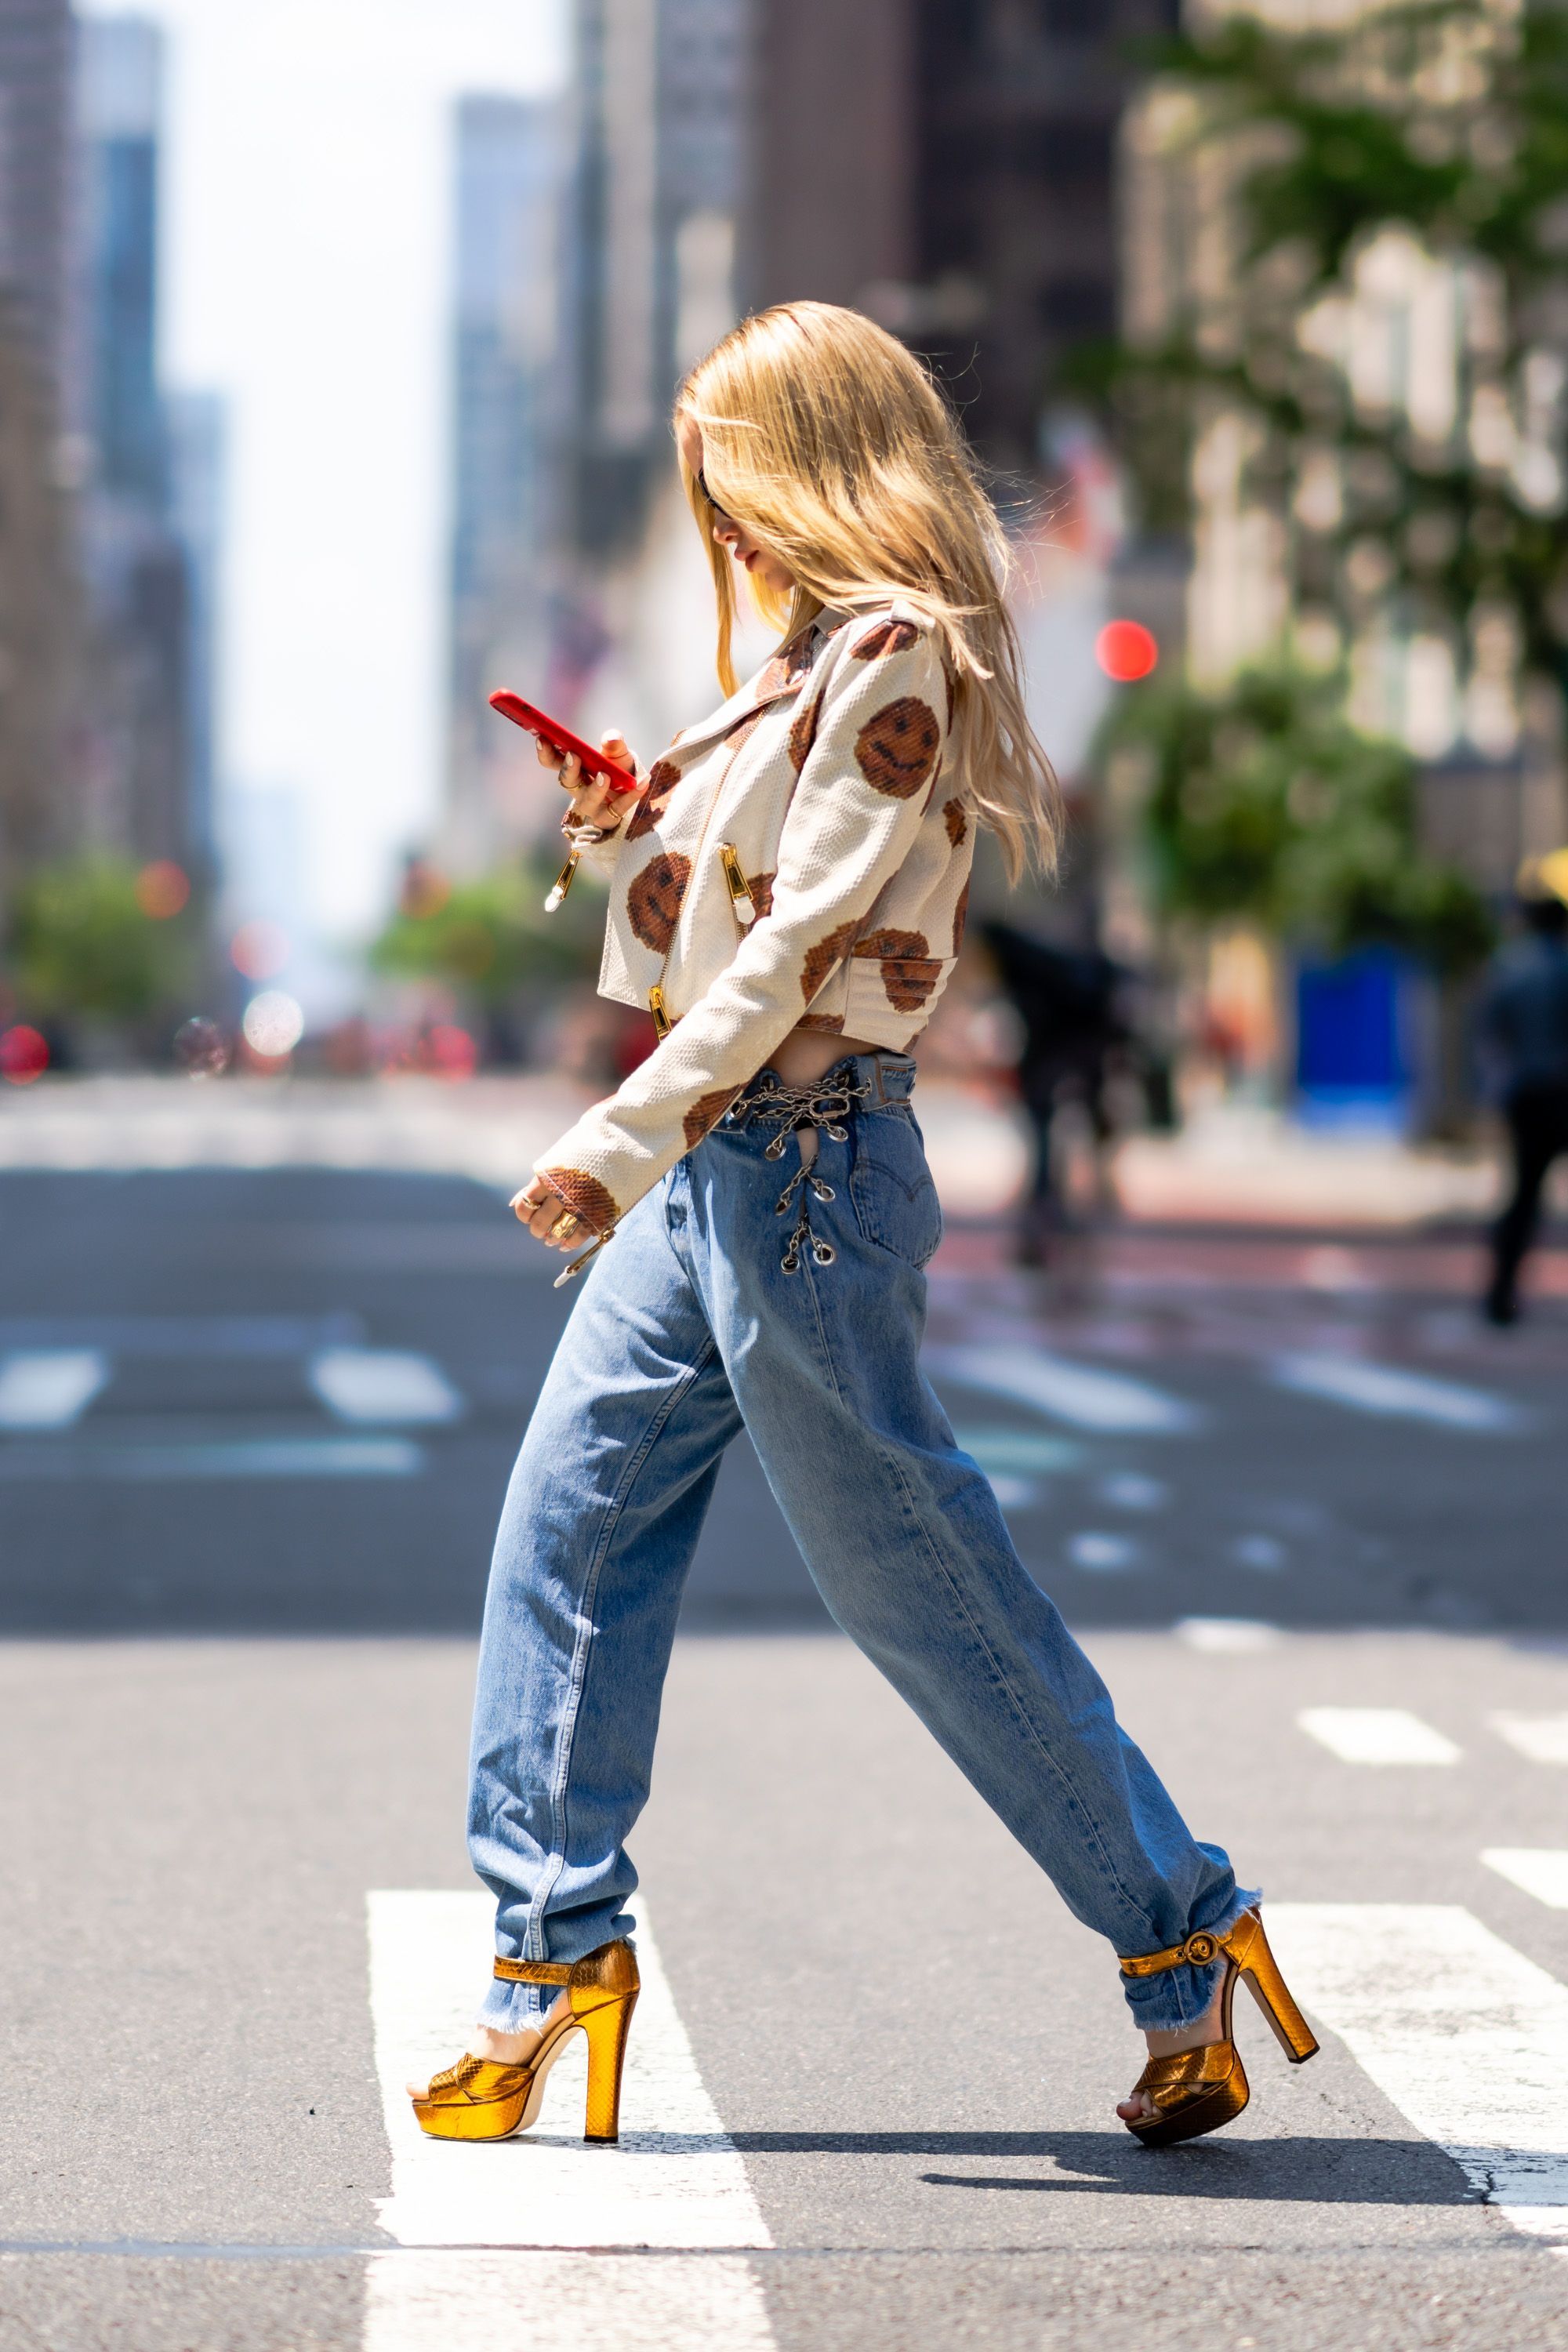 Foto da atriz e cantora Dove Cameron de lado, caminhando em uma rua. Ela está olhando para seu celular, usando jaqueta e calça jeans.